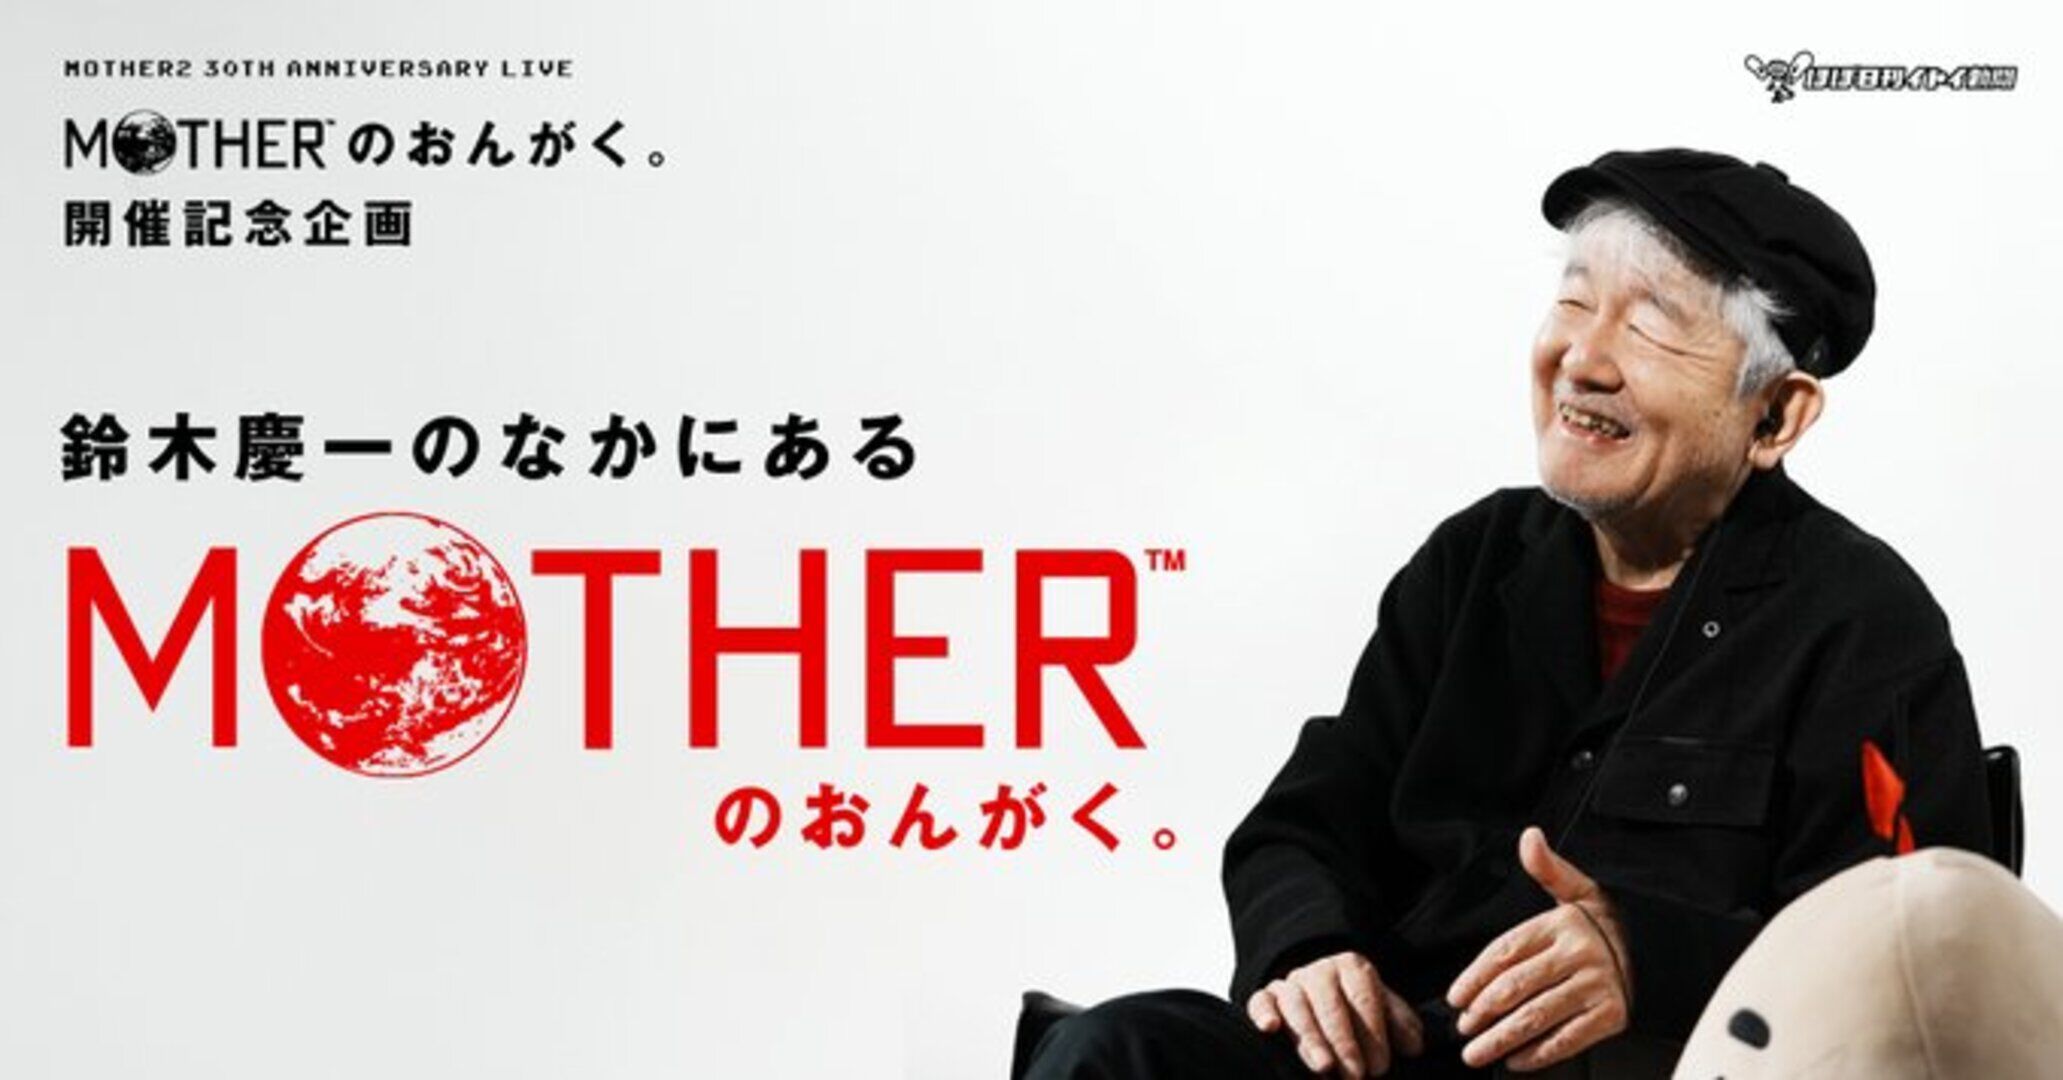 『MOTHER』の音楽を作った鈴木慶一へのインタビューが公開。30周年記念ライブ“MOTHERのおんがく。”に先駆けて実施